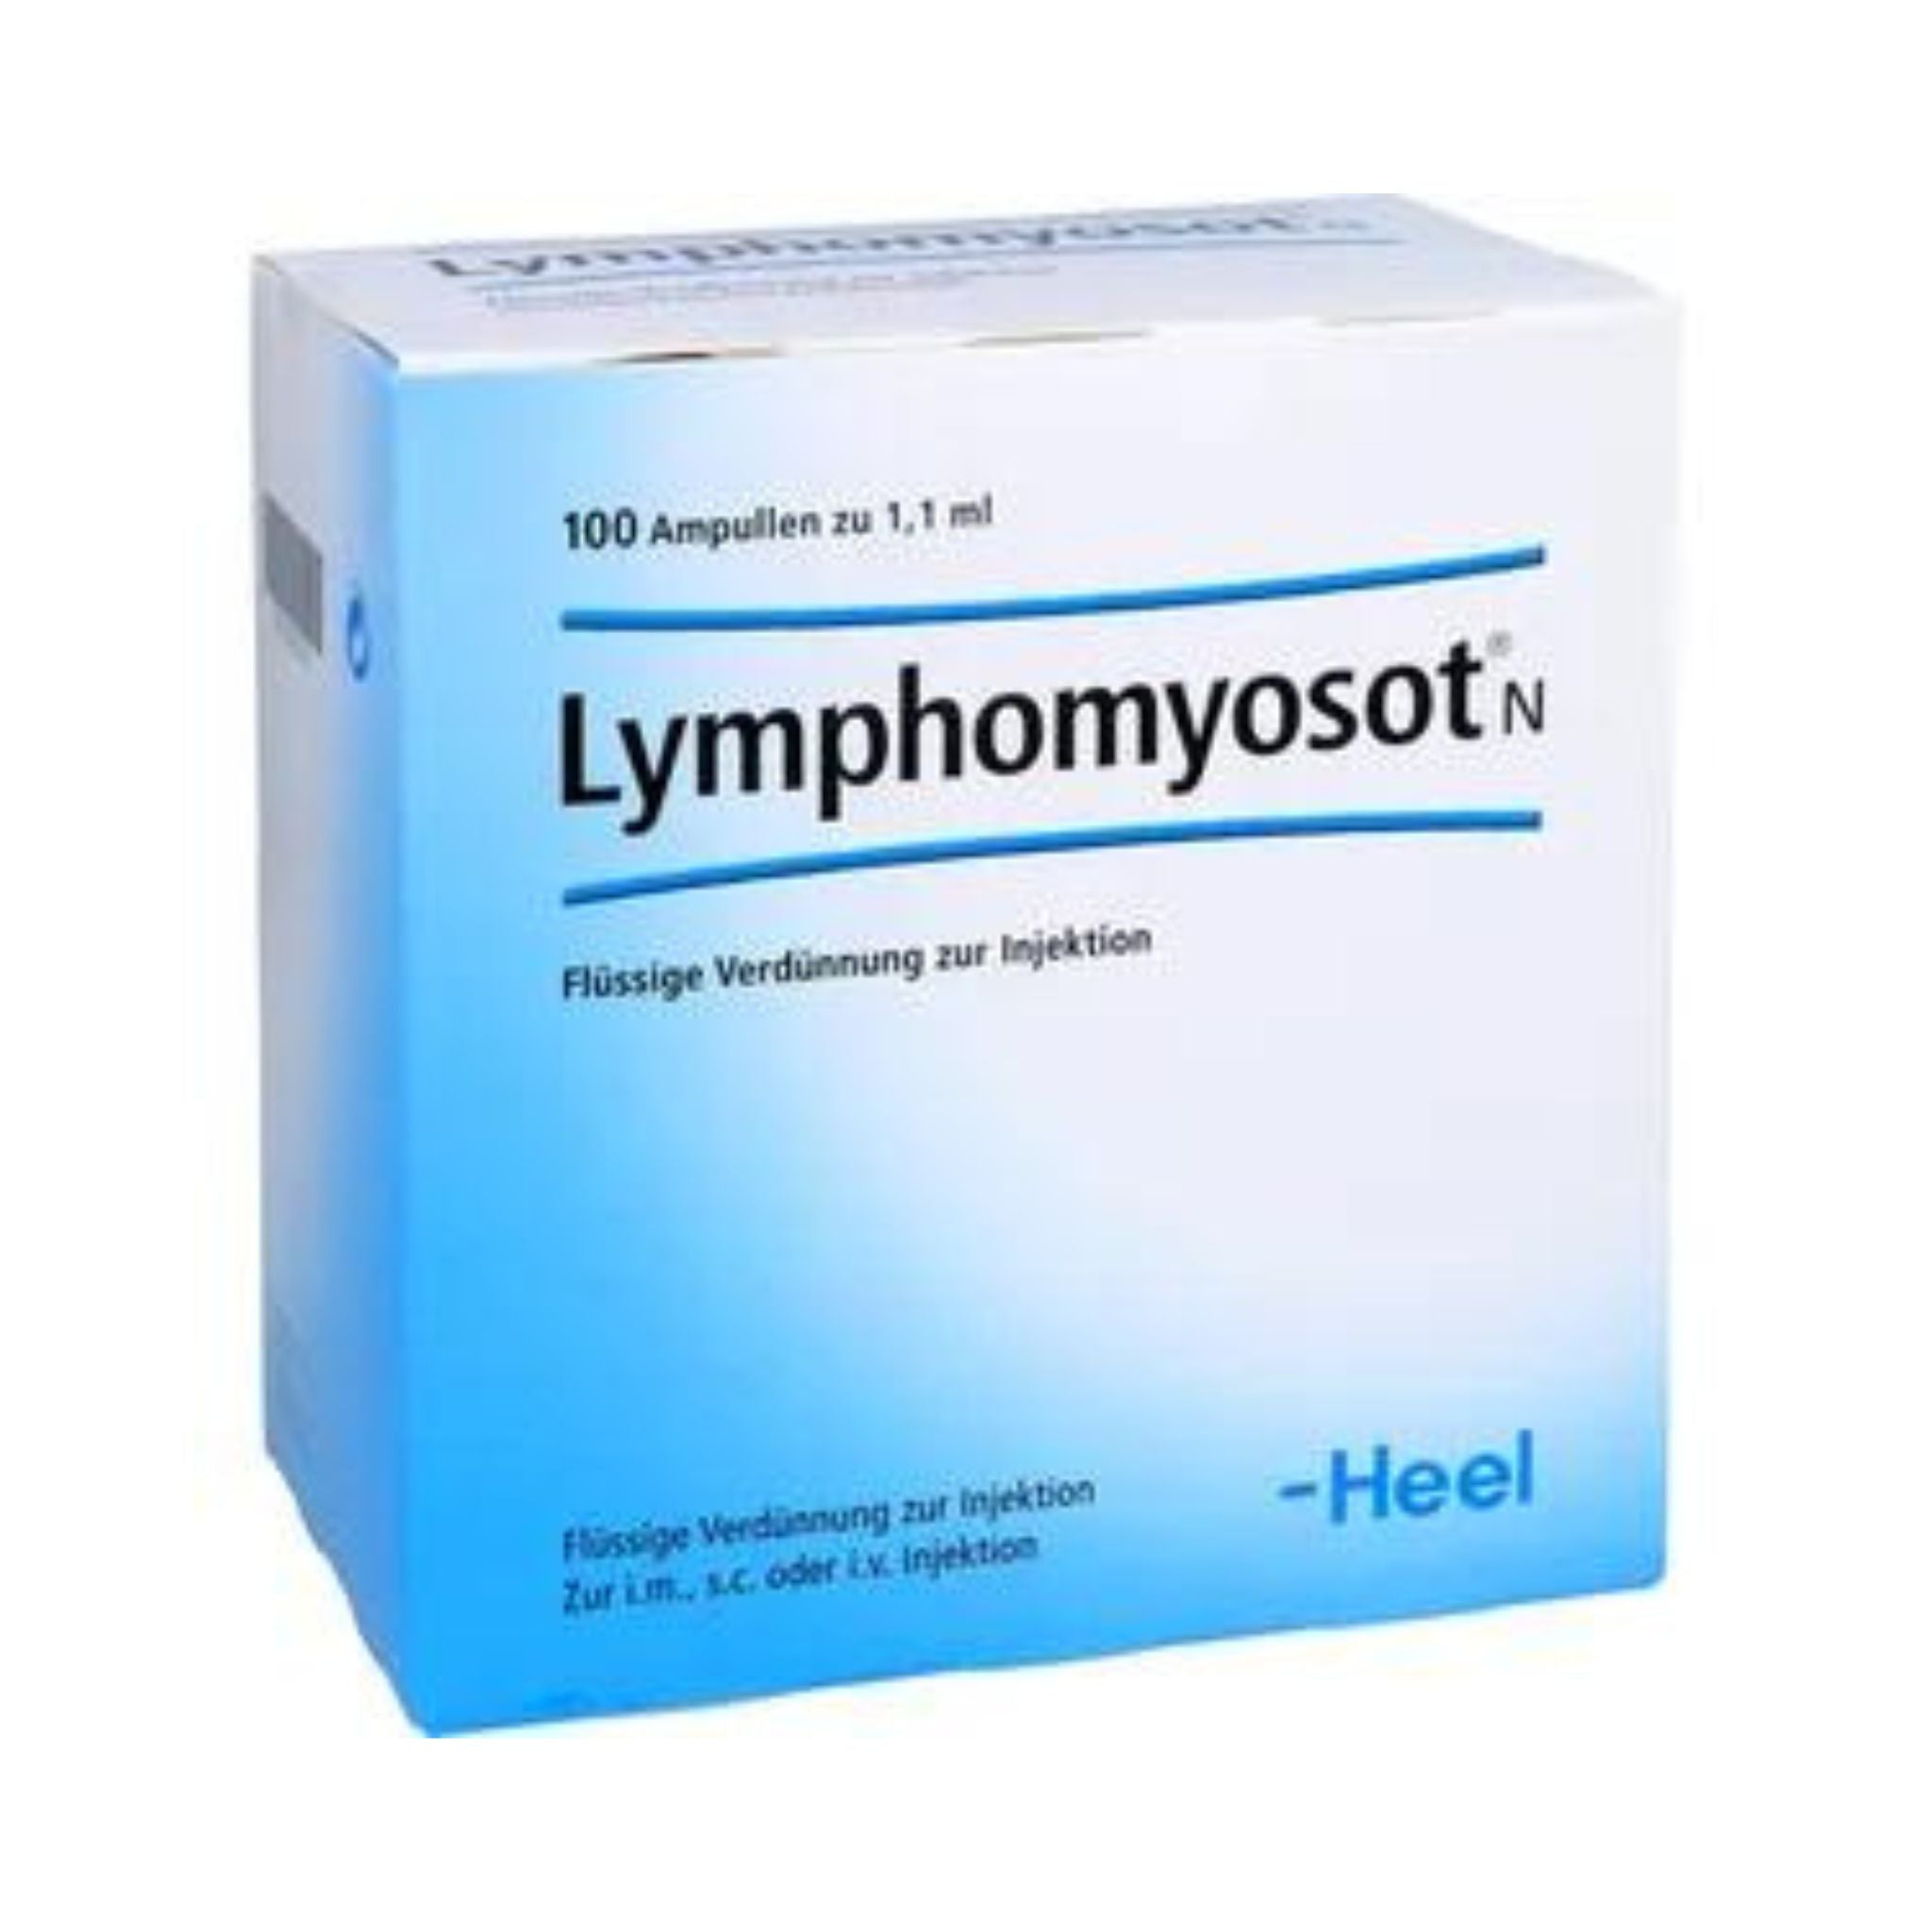 Lymphomyosot Ampoule